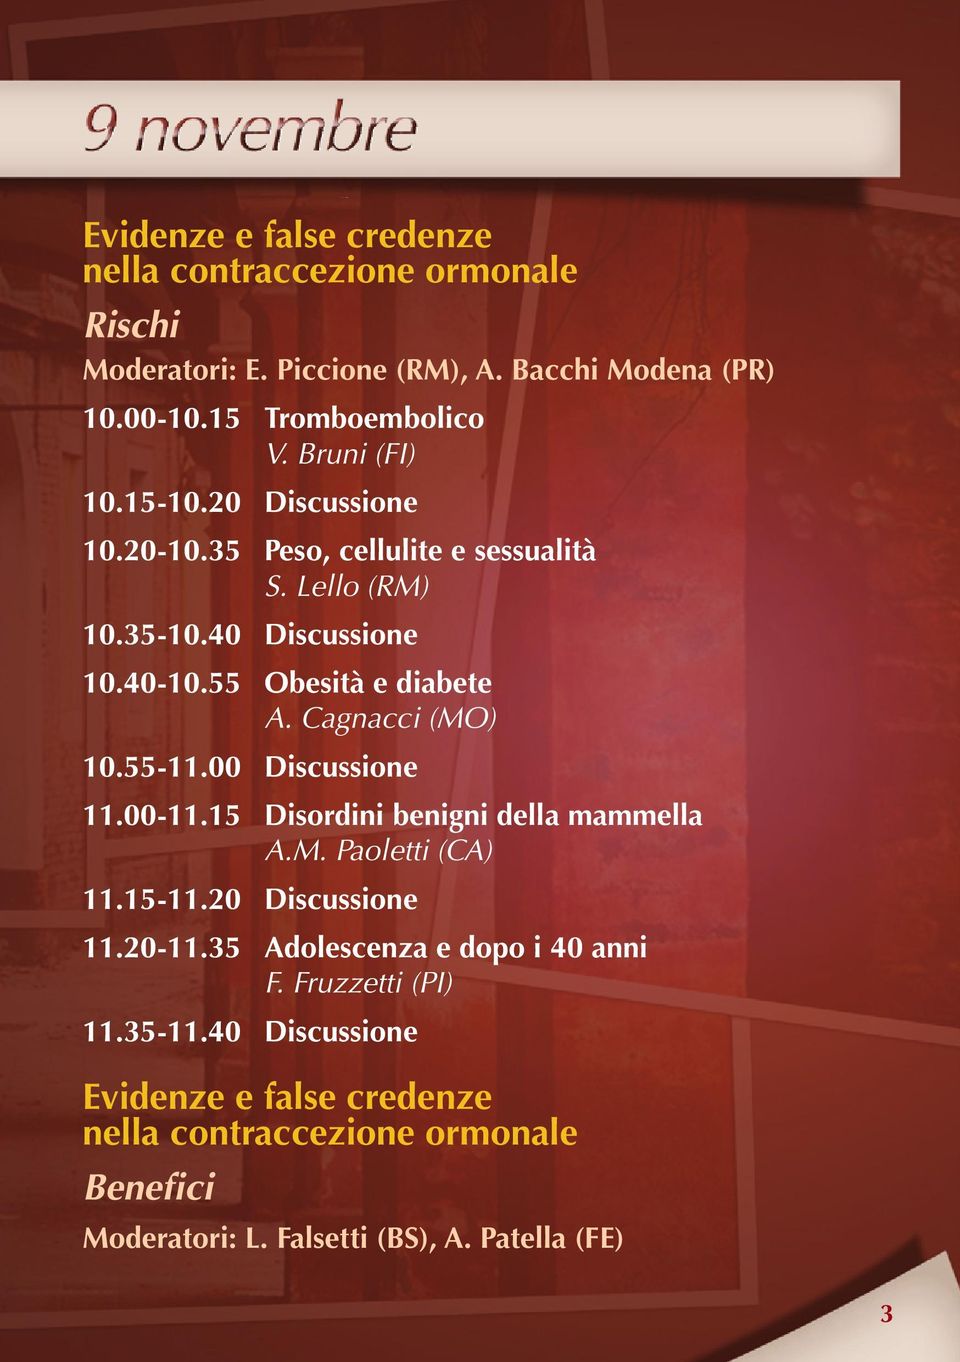 Cagnacci (MO) 10.55-11.00 Discussione 11.00-11.15 Disordini benigni della mammella A.M. Paoletti (CA) 11.15-11.20 Discussione 11.20-11.